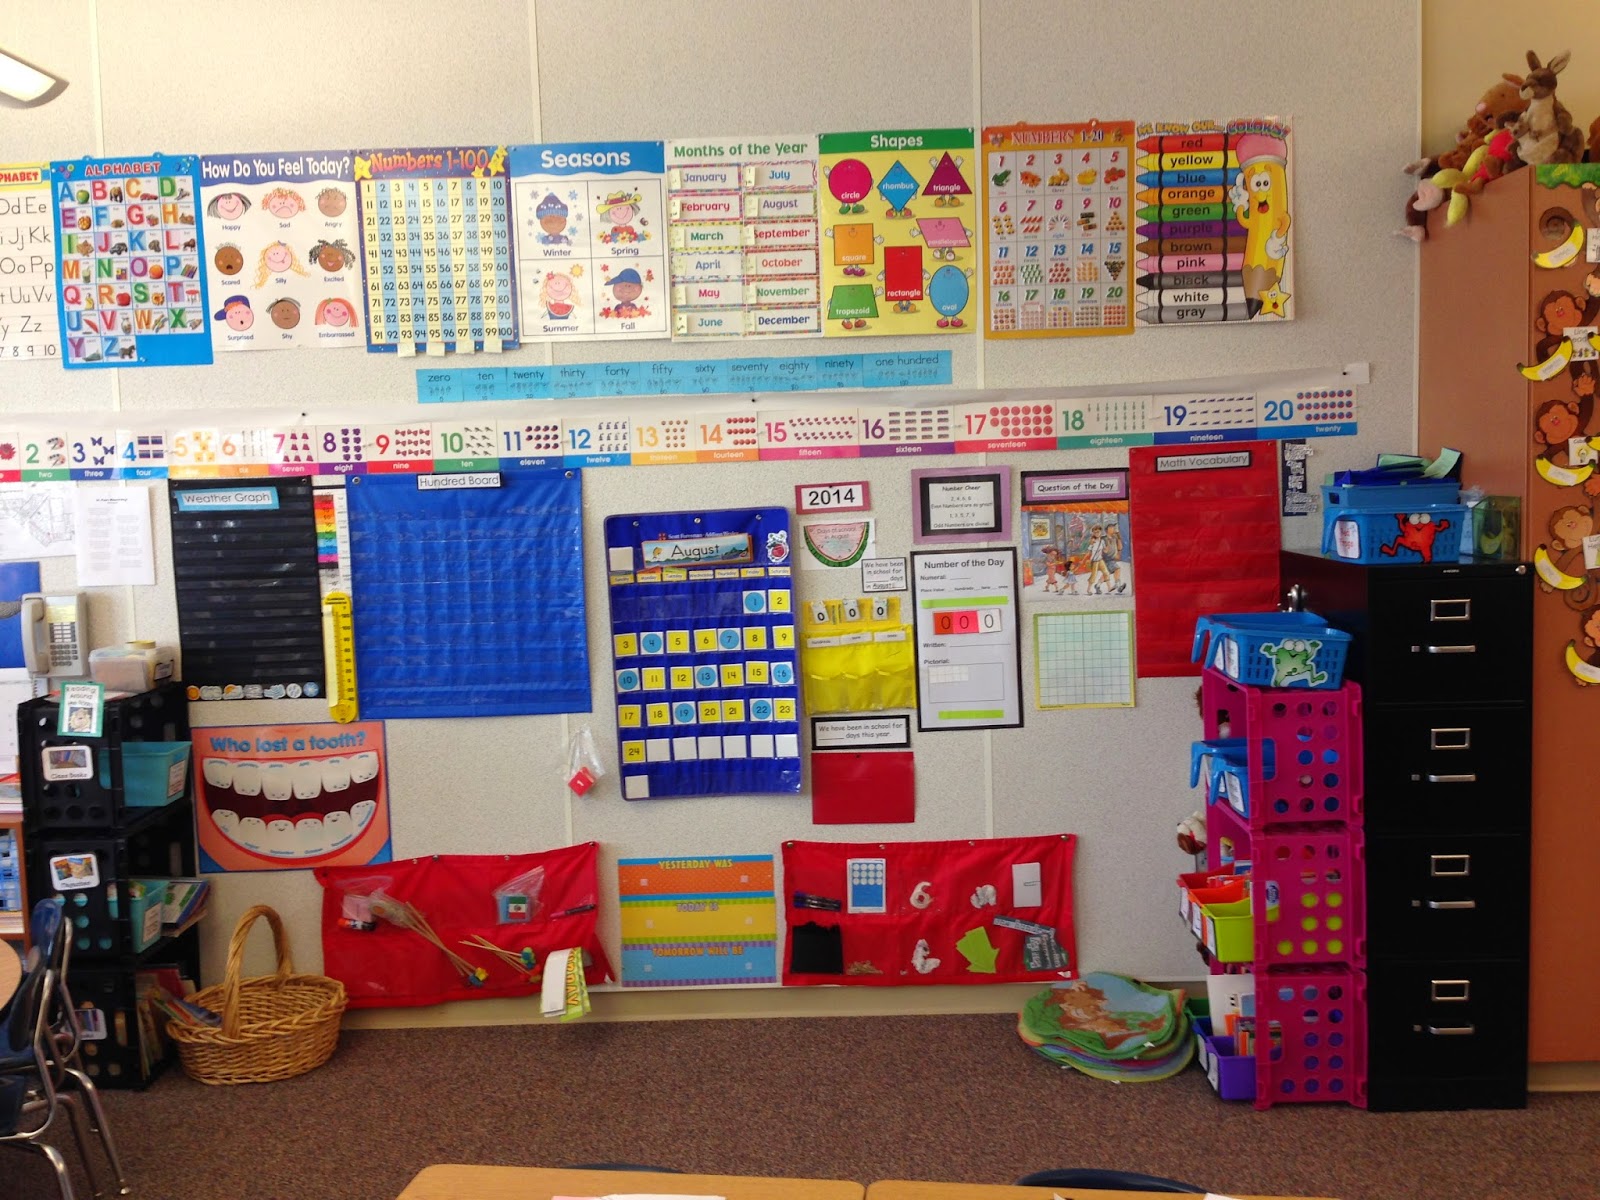 Miss Van Maren's Fantastic First Grade: My Classroom